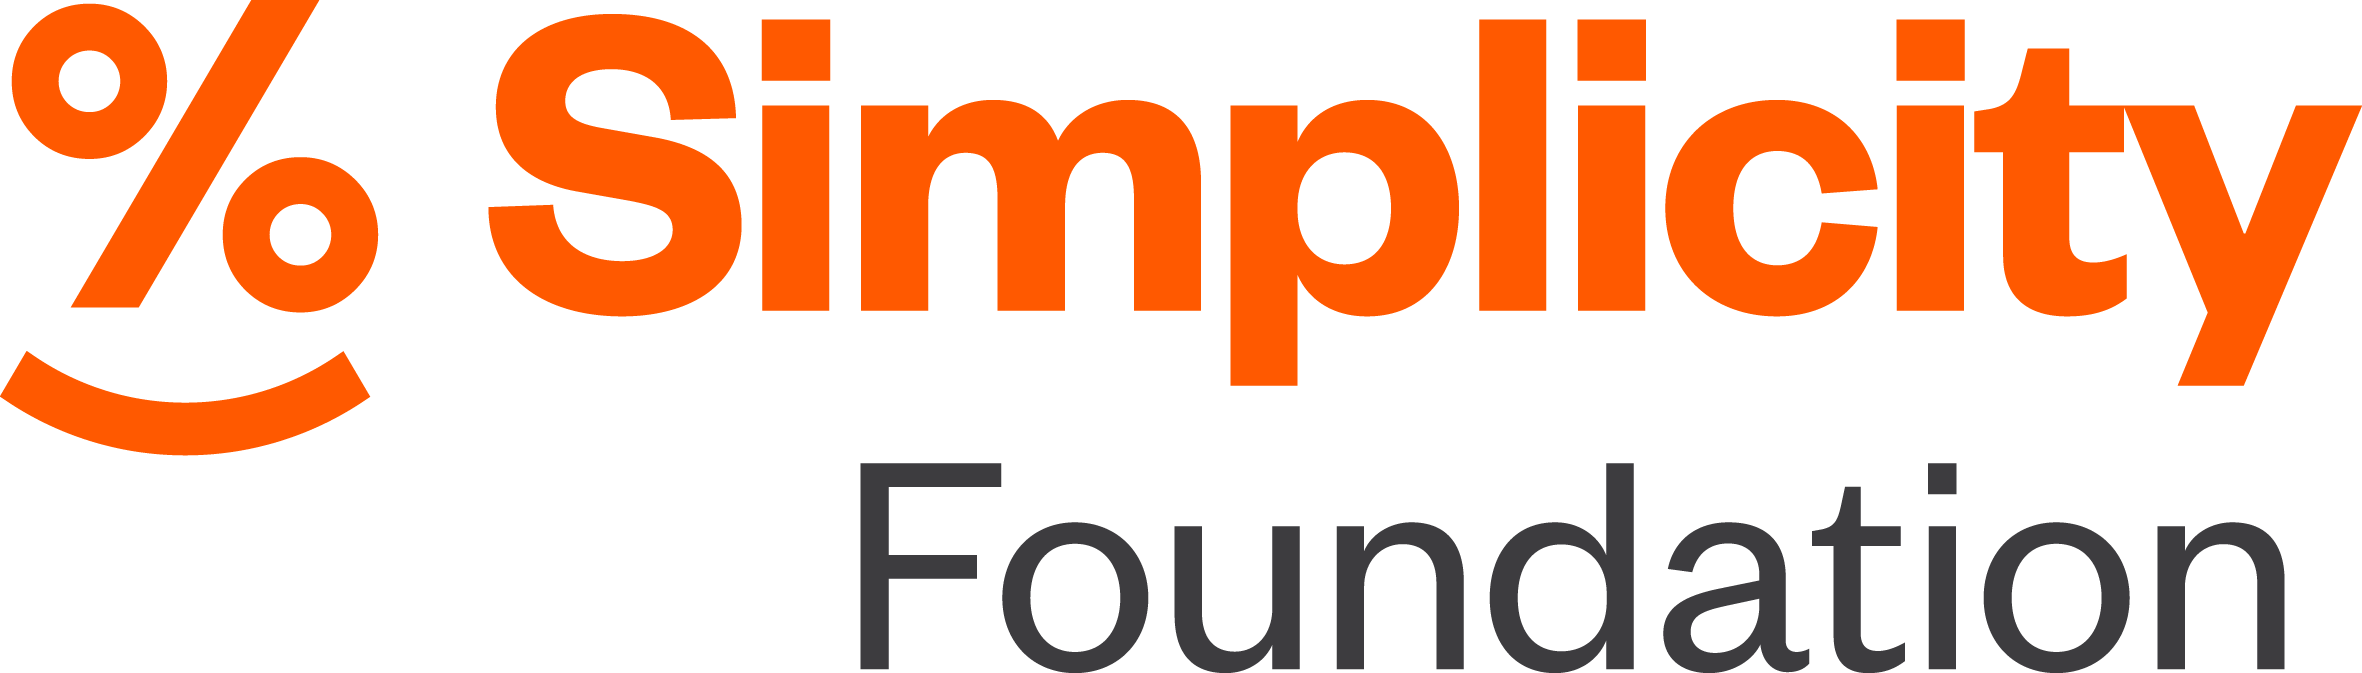 Simplicity foundation logo